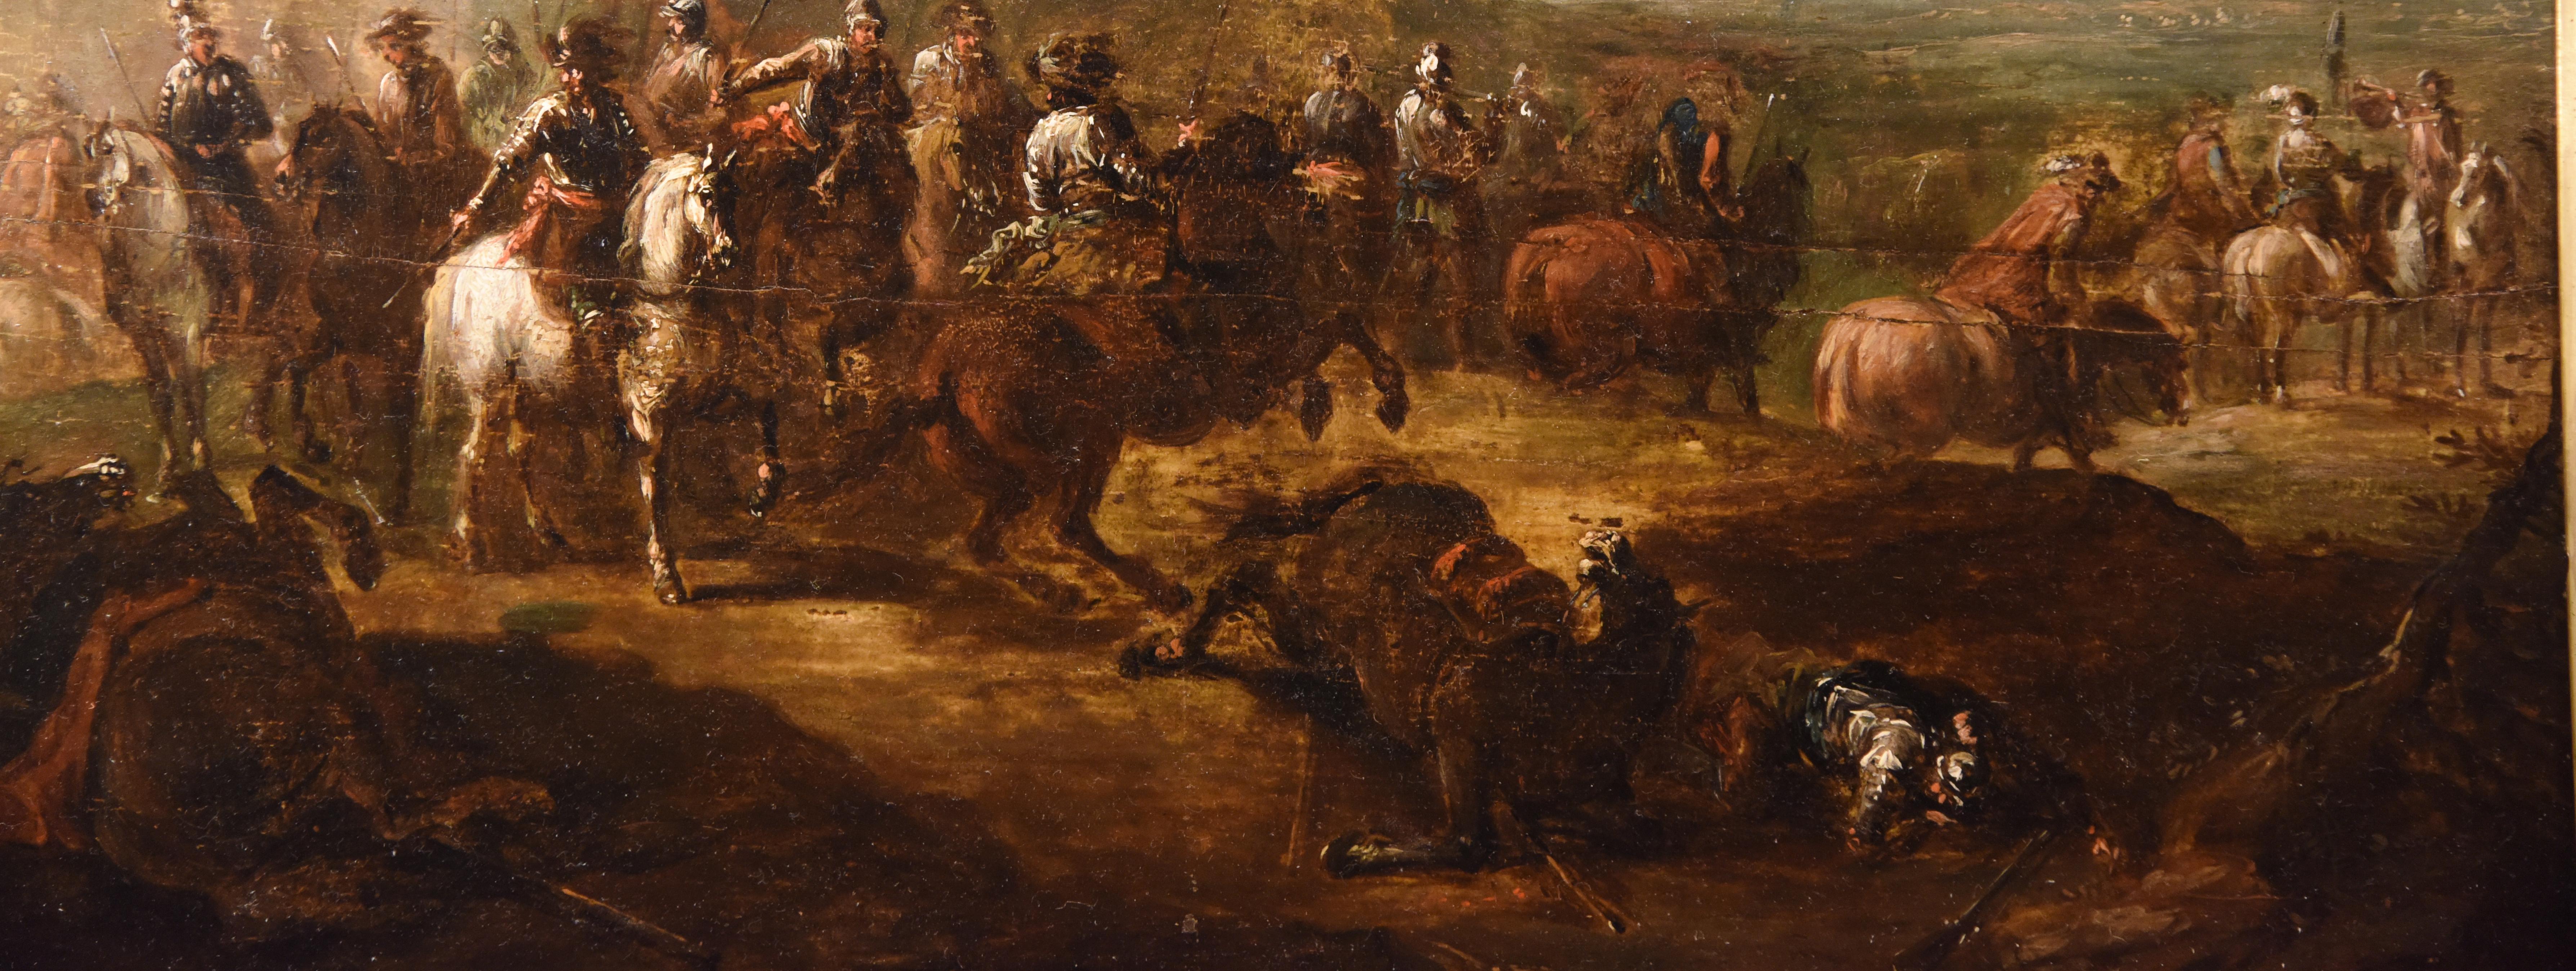 Ölgemälde mit dem Titel „Conquistadors nach der Schlacht“ aus dem 18. Jahrhundert 3